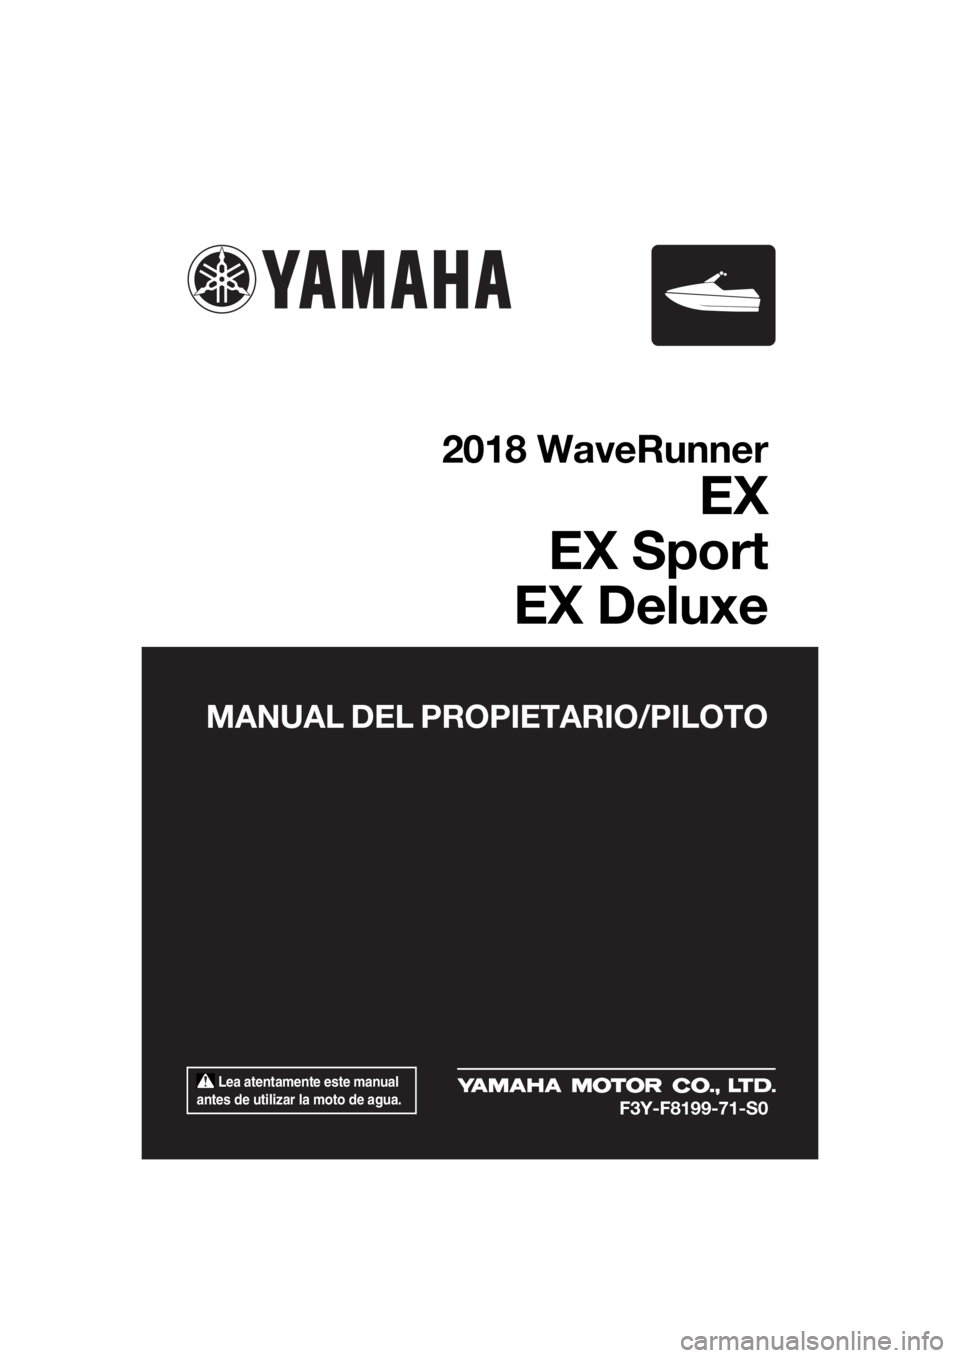 YAMAHA EX DELUXE 2018  Manuale de Empleo (in Spanish)  Lea atentamente este manual 
antes de utilizar la moto de agua.
MANUAL DEL PROPIETARIO/PILOTO
2018 WaveRunner
EX
EX Sport
EX Deluxe
F3Y-F8199-71-S0
UF3Y71S0.book  Page 1  Wednesday, May 24, 2017  3:3